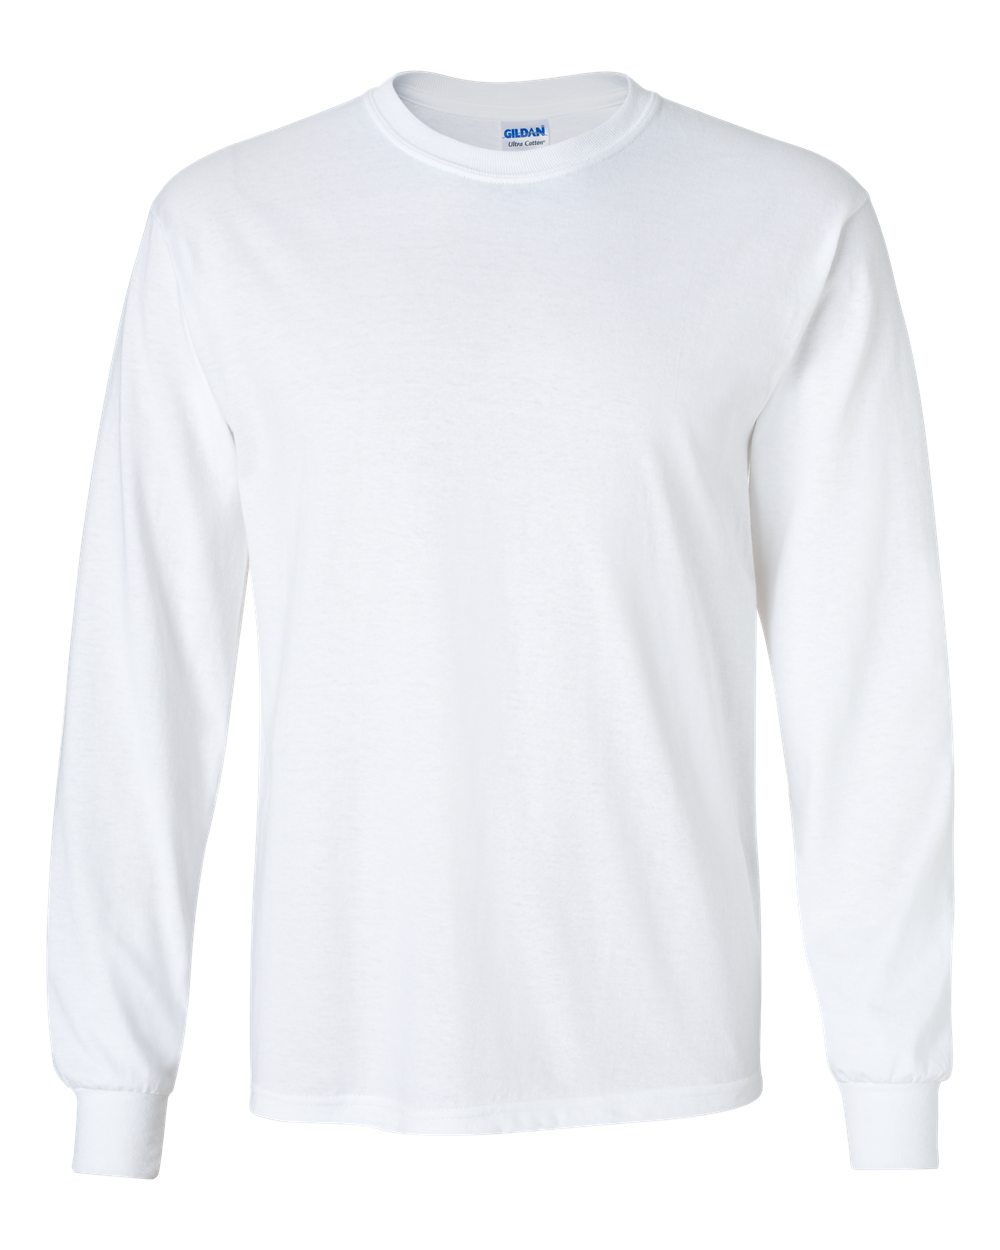 long sleeve shirts gildan 2400 - ultra cotton™ long sleeve t-shirt | wordans.com cvnrjws